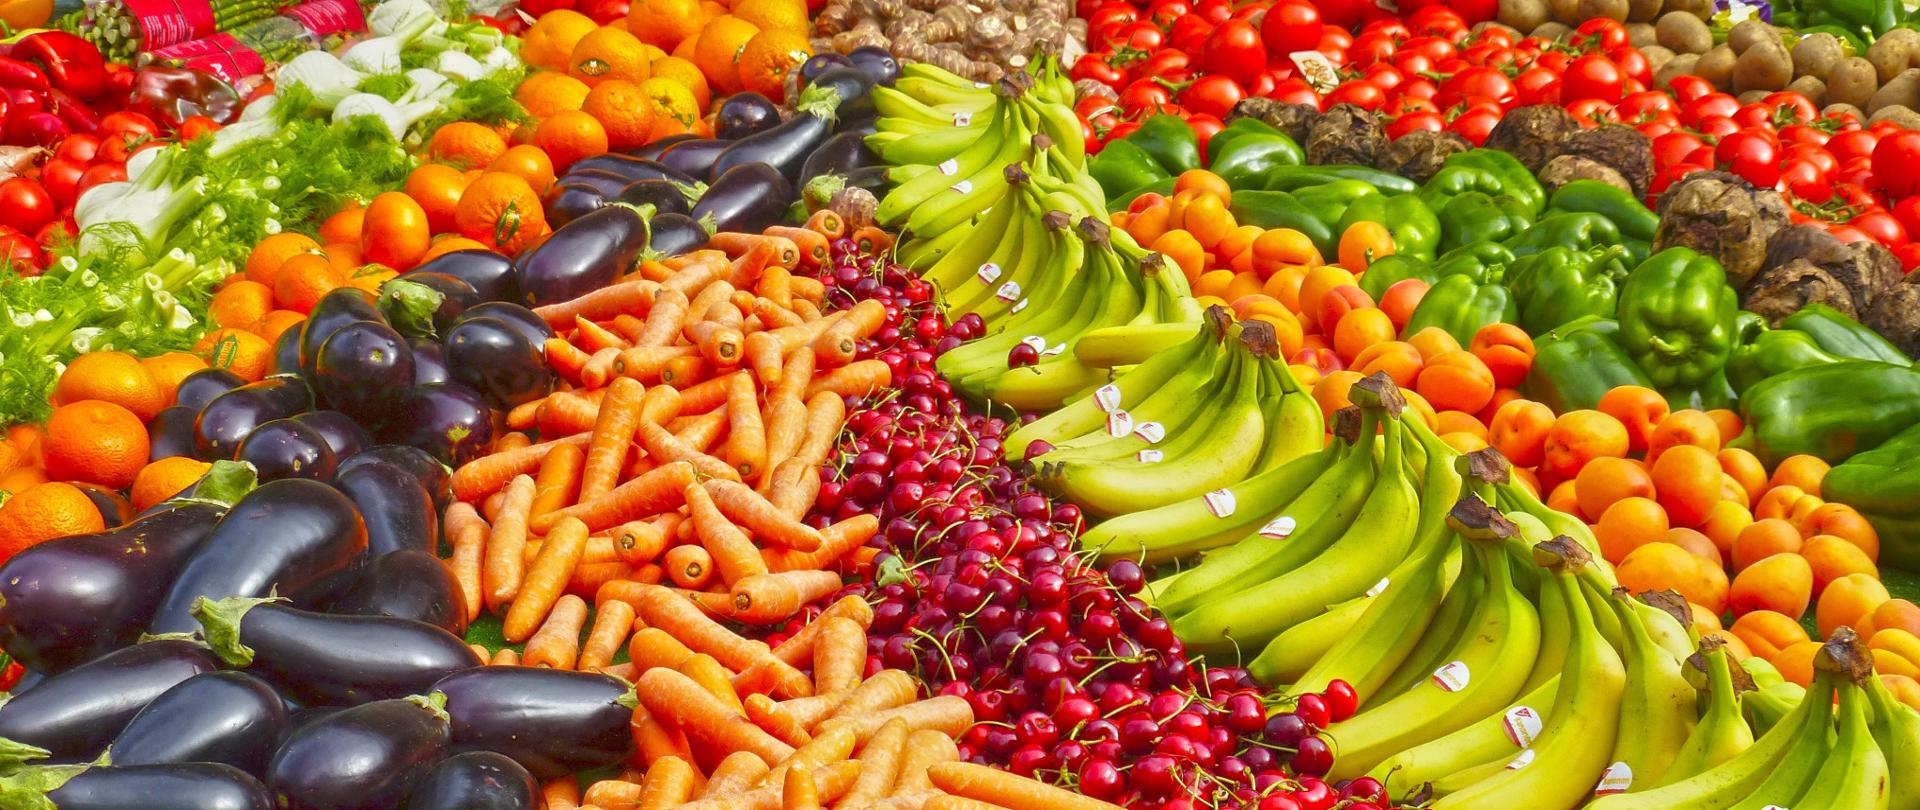 Świeże owoce i warzywa poukładane rzędami. Od prawej pomidory, buraki czerwone, zielona papryka, morele, banany, czereśnie marchew, bakłażany, pomarańcze, koper włoski, czerwona papryka, szparagi